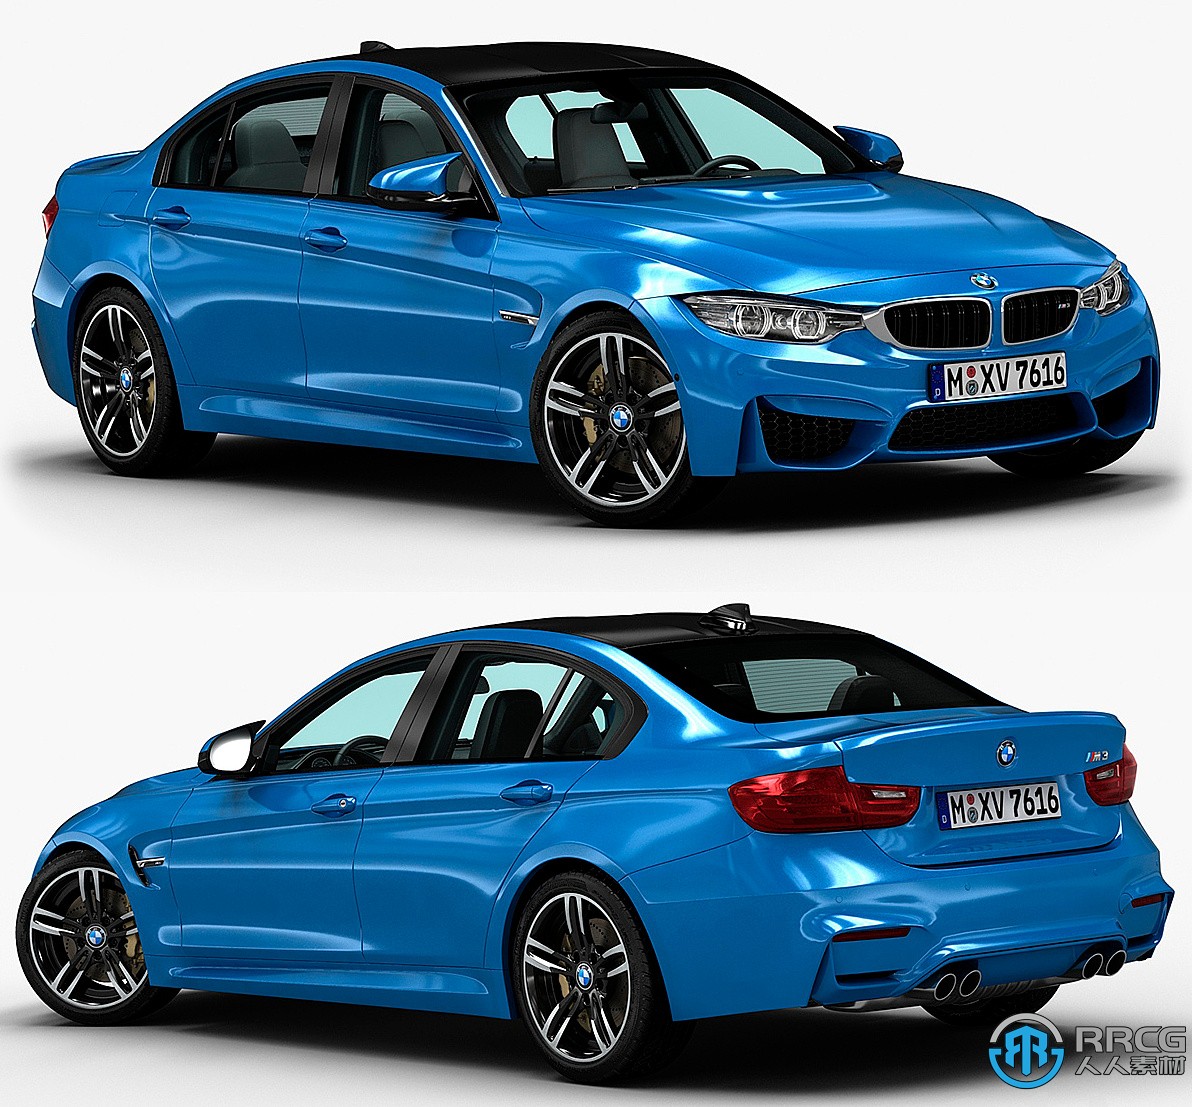 宝马 BMW M3汽车3D模型